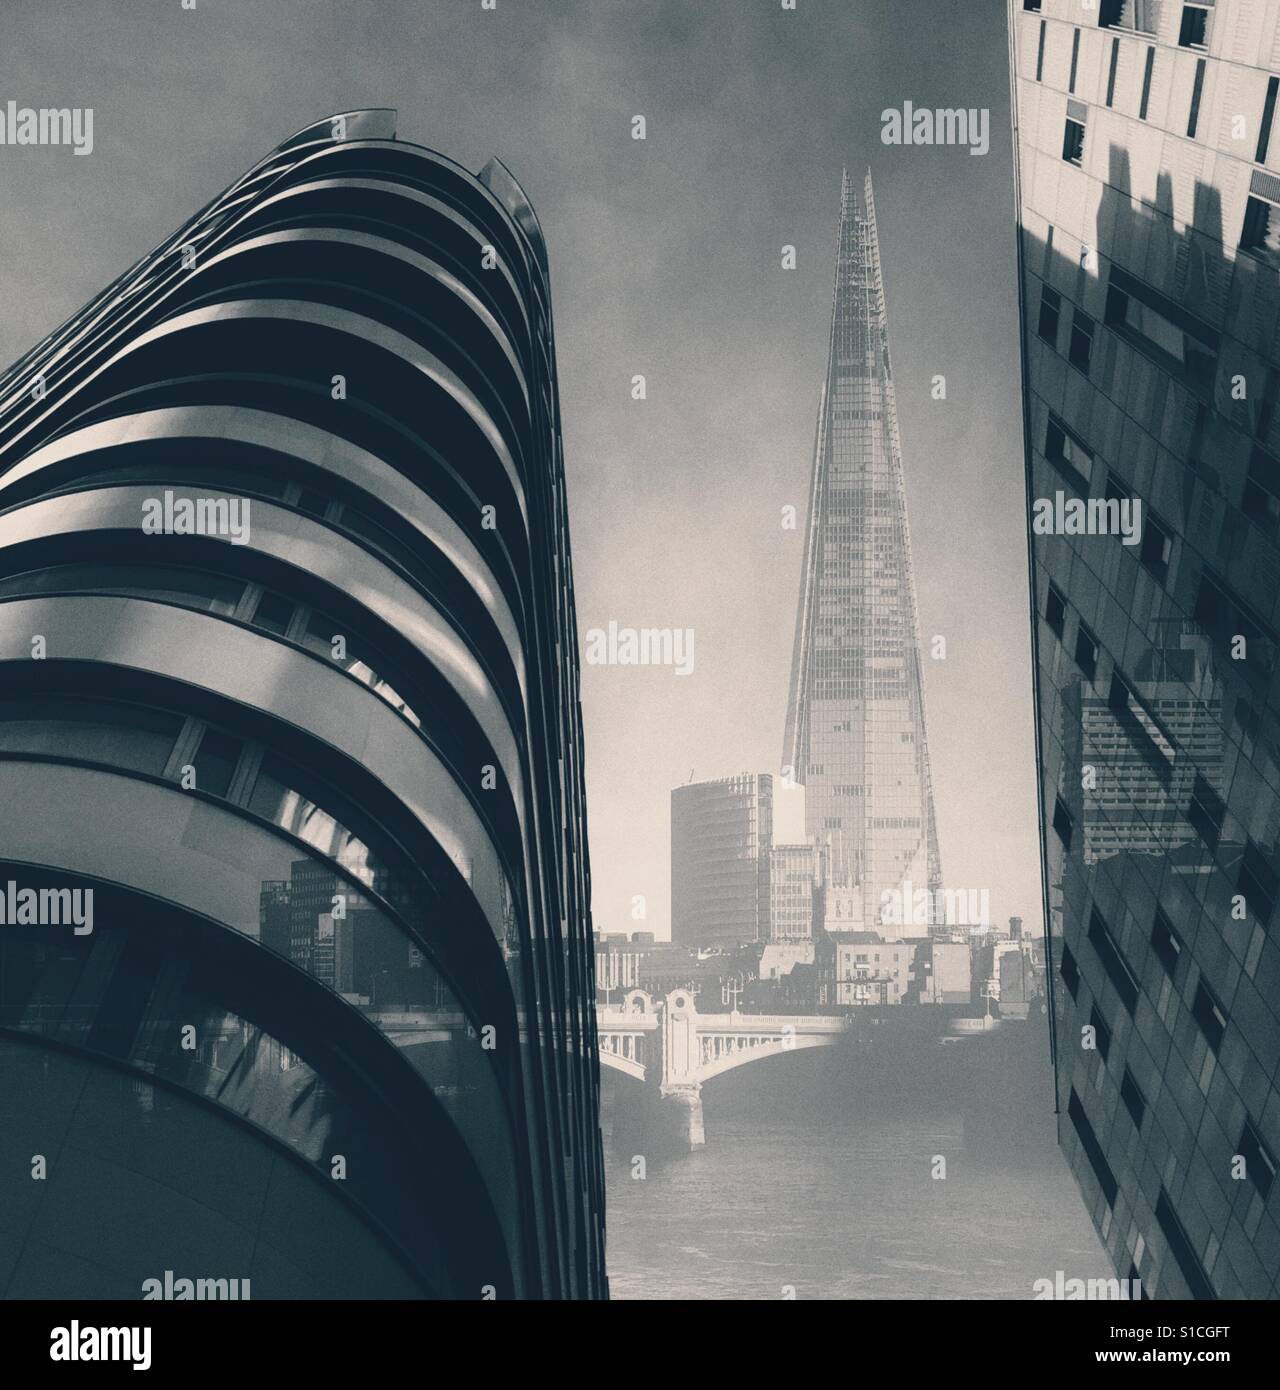 Eine Reihe von London Gebäude, darunter die Scherbe in abstrakter Form dargestellt Stockfoto